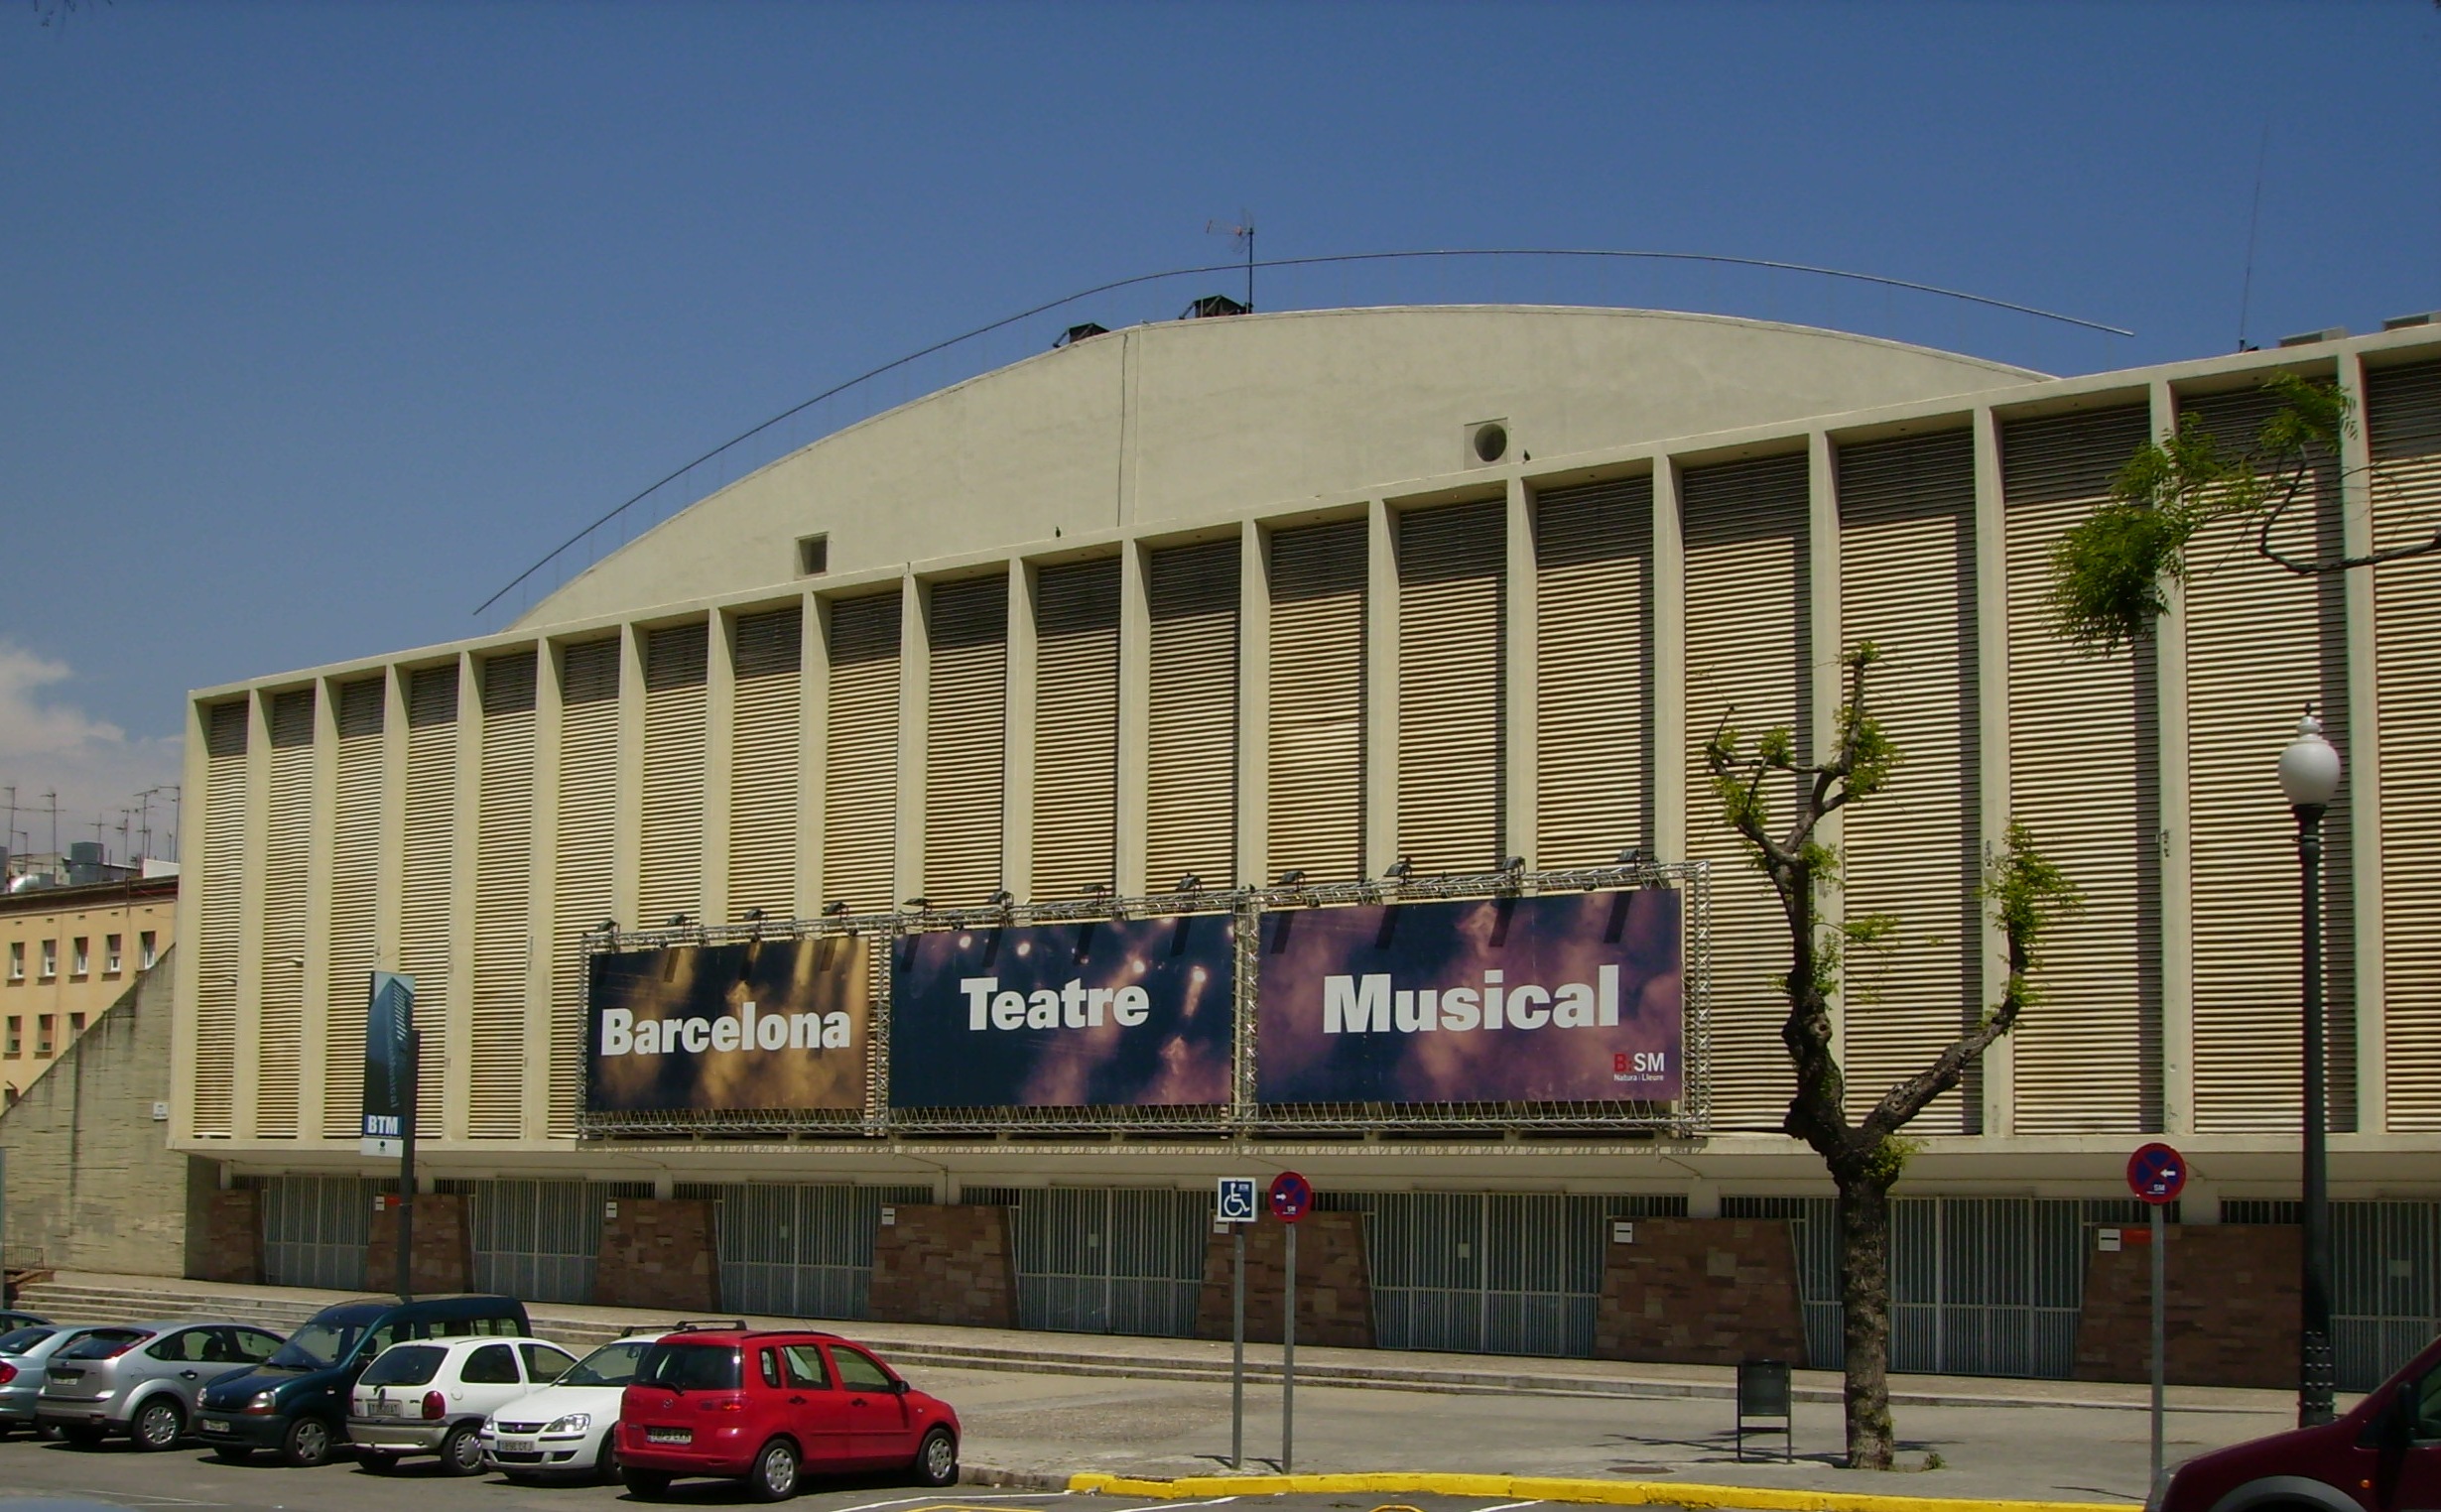 Megasport Sport Palace - Wikipedia